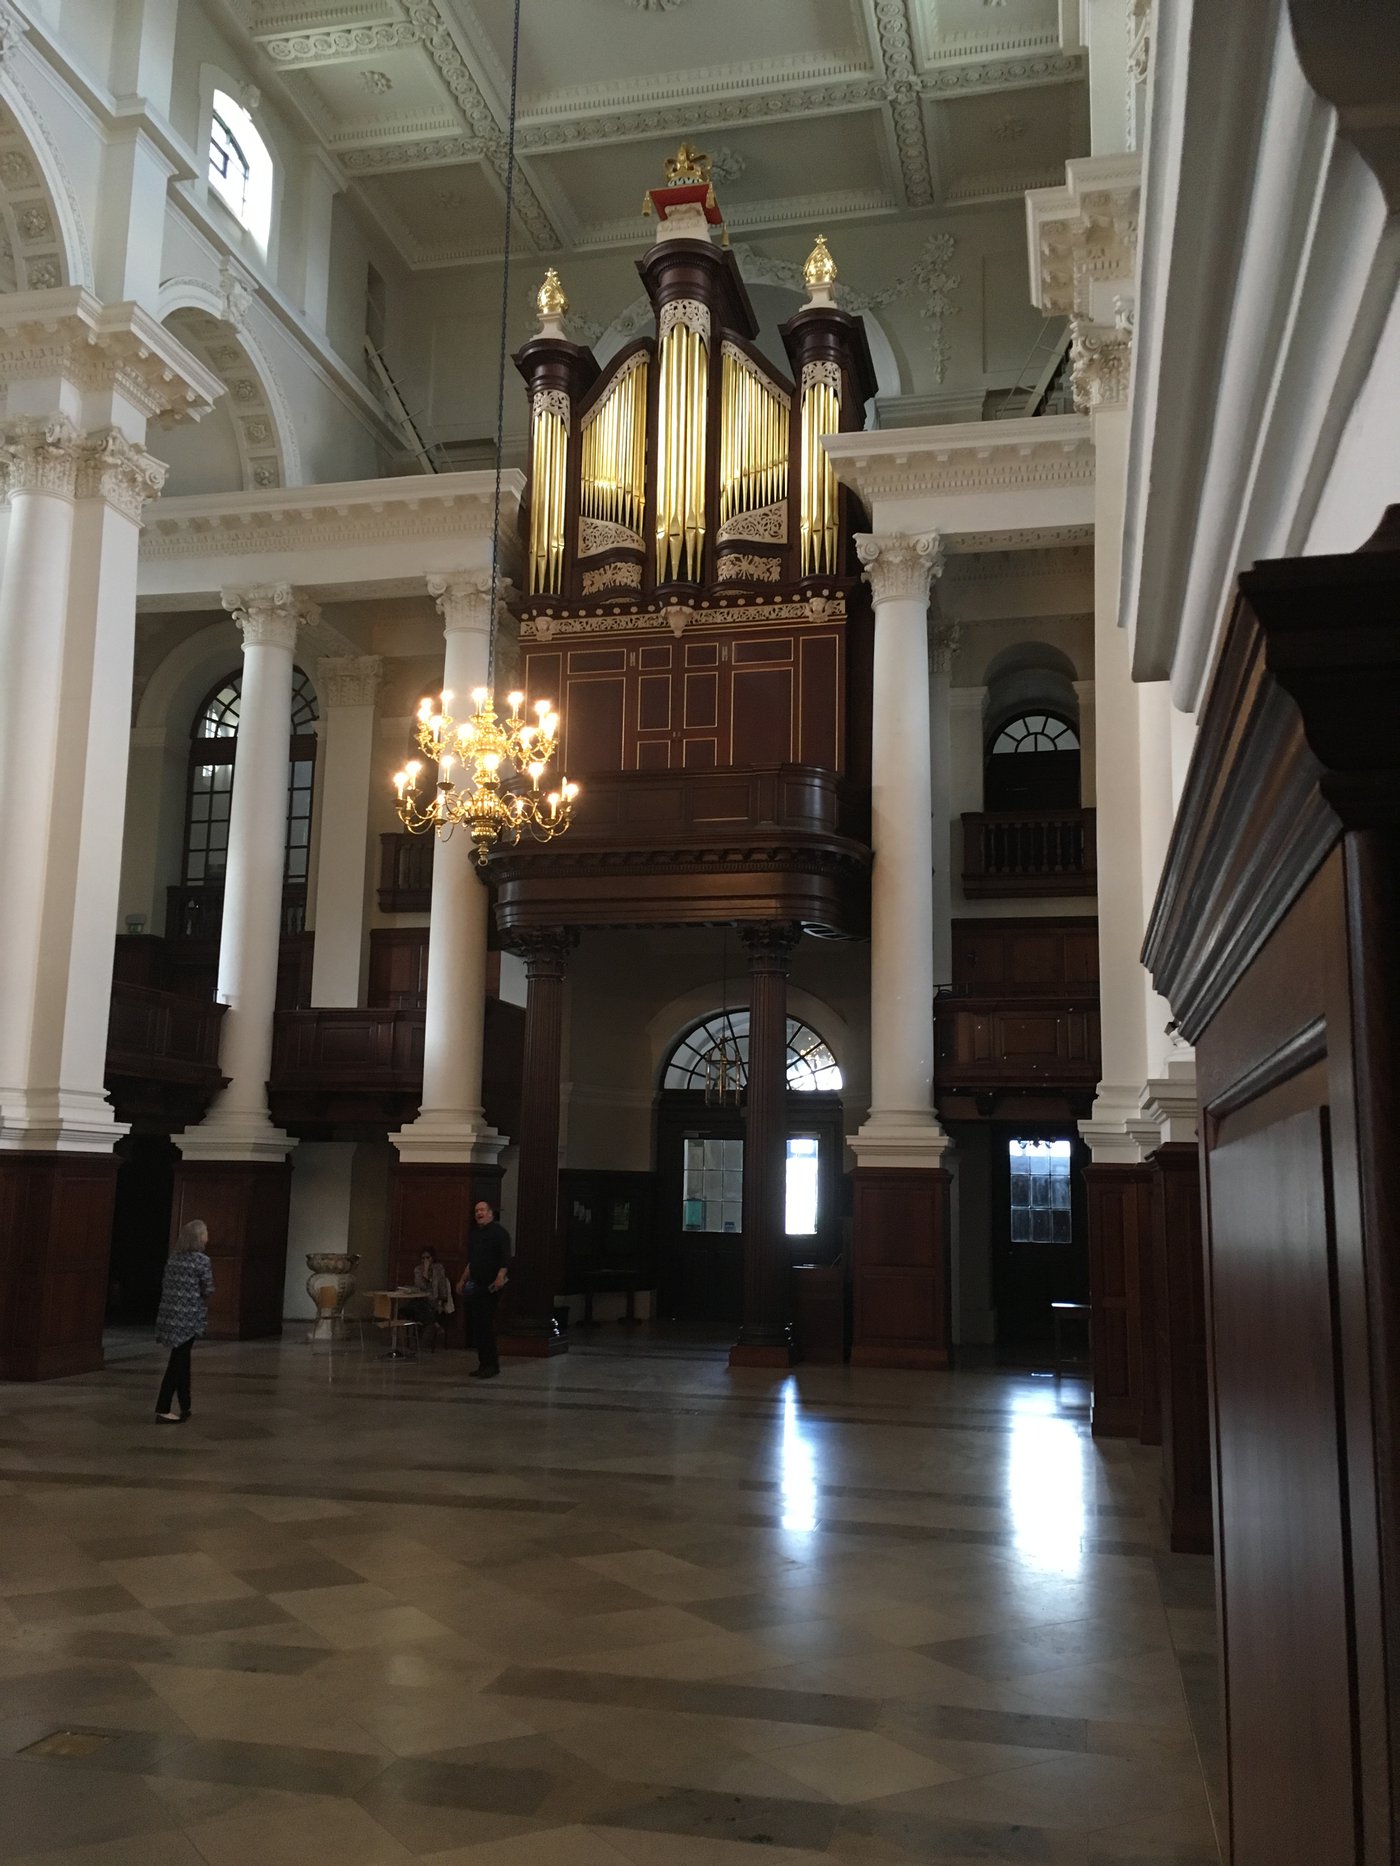 Christ Church Organ